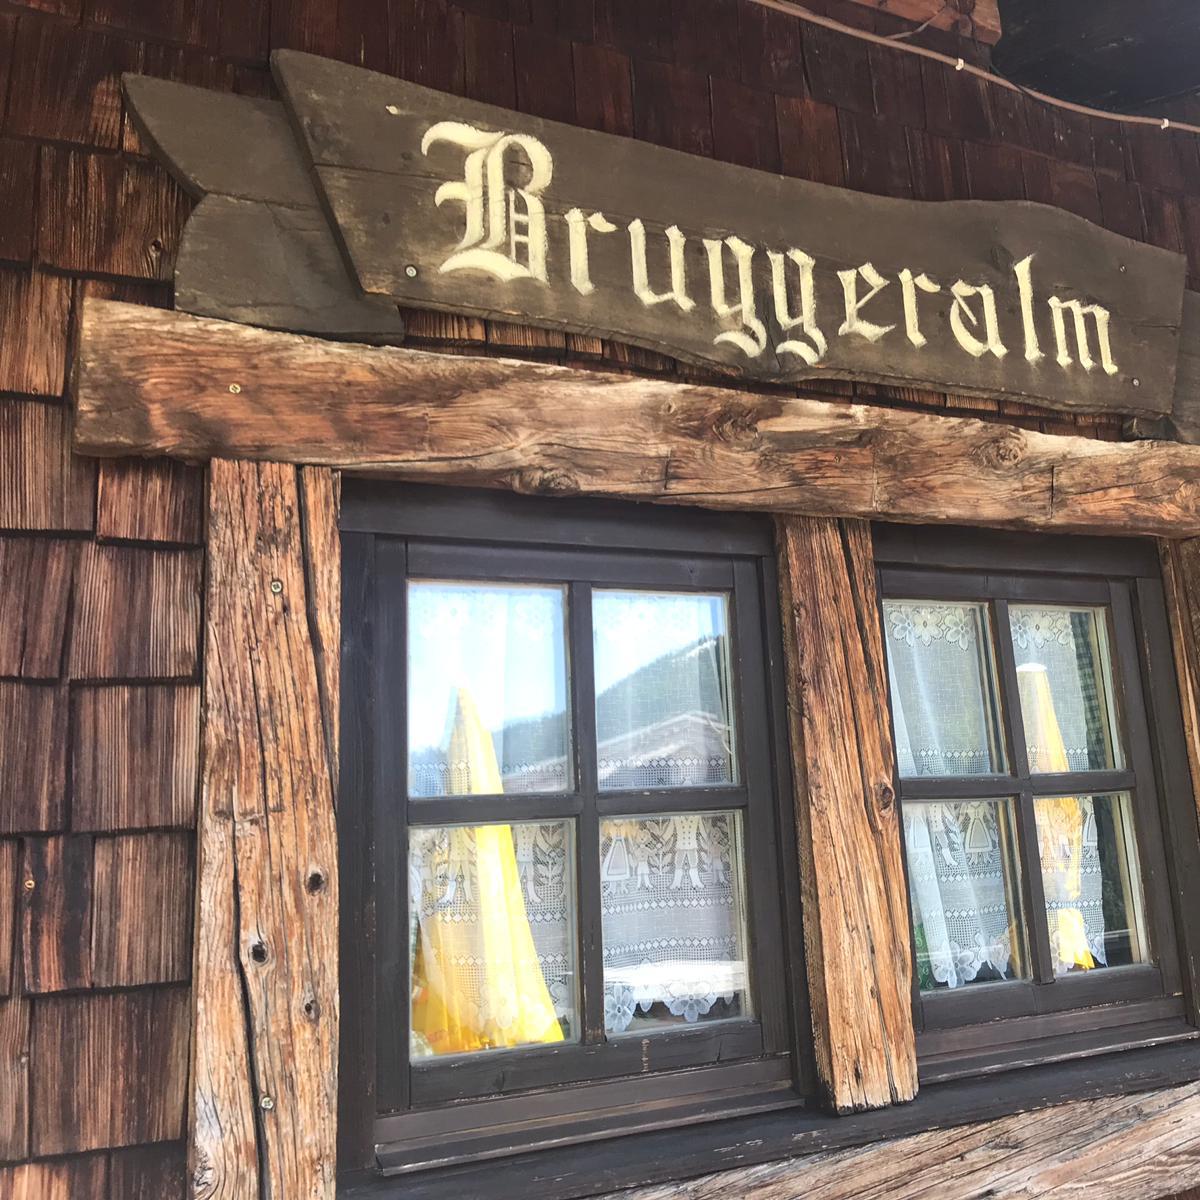 Restaurant "Bruggeralm" in Jochberg